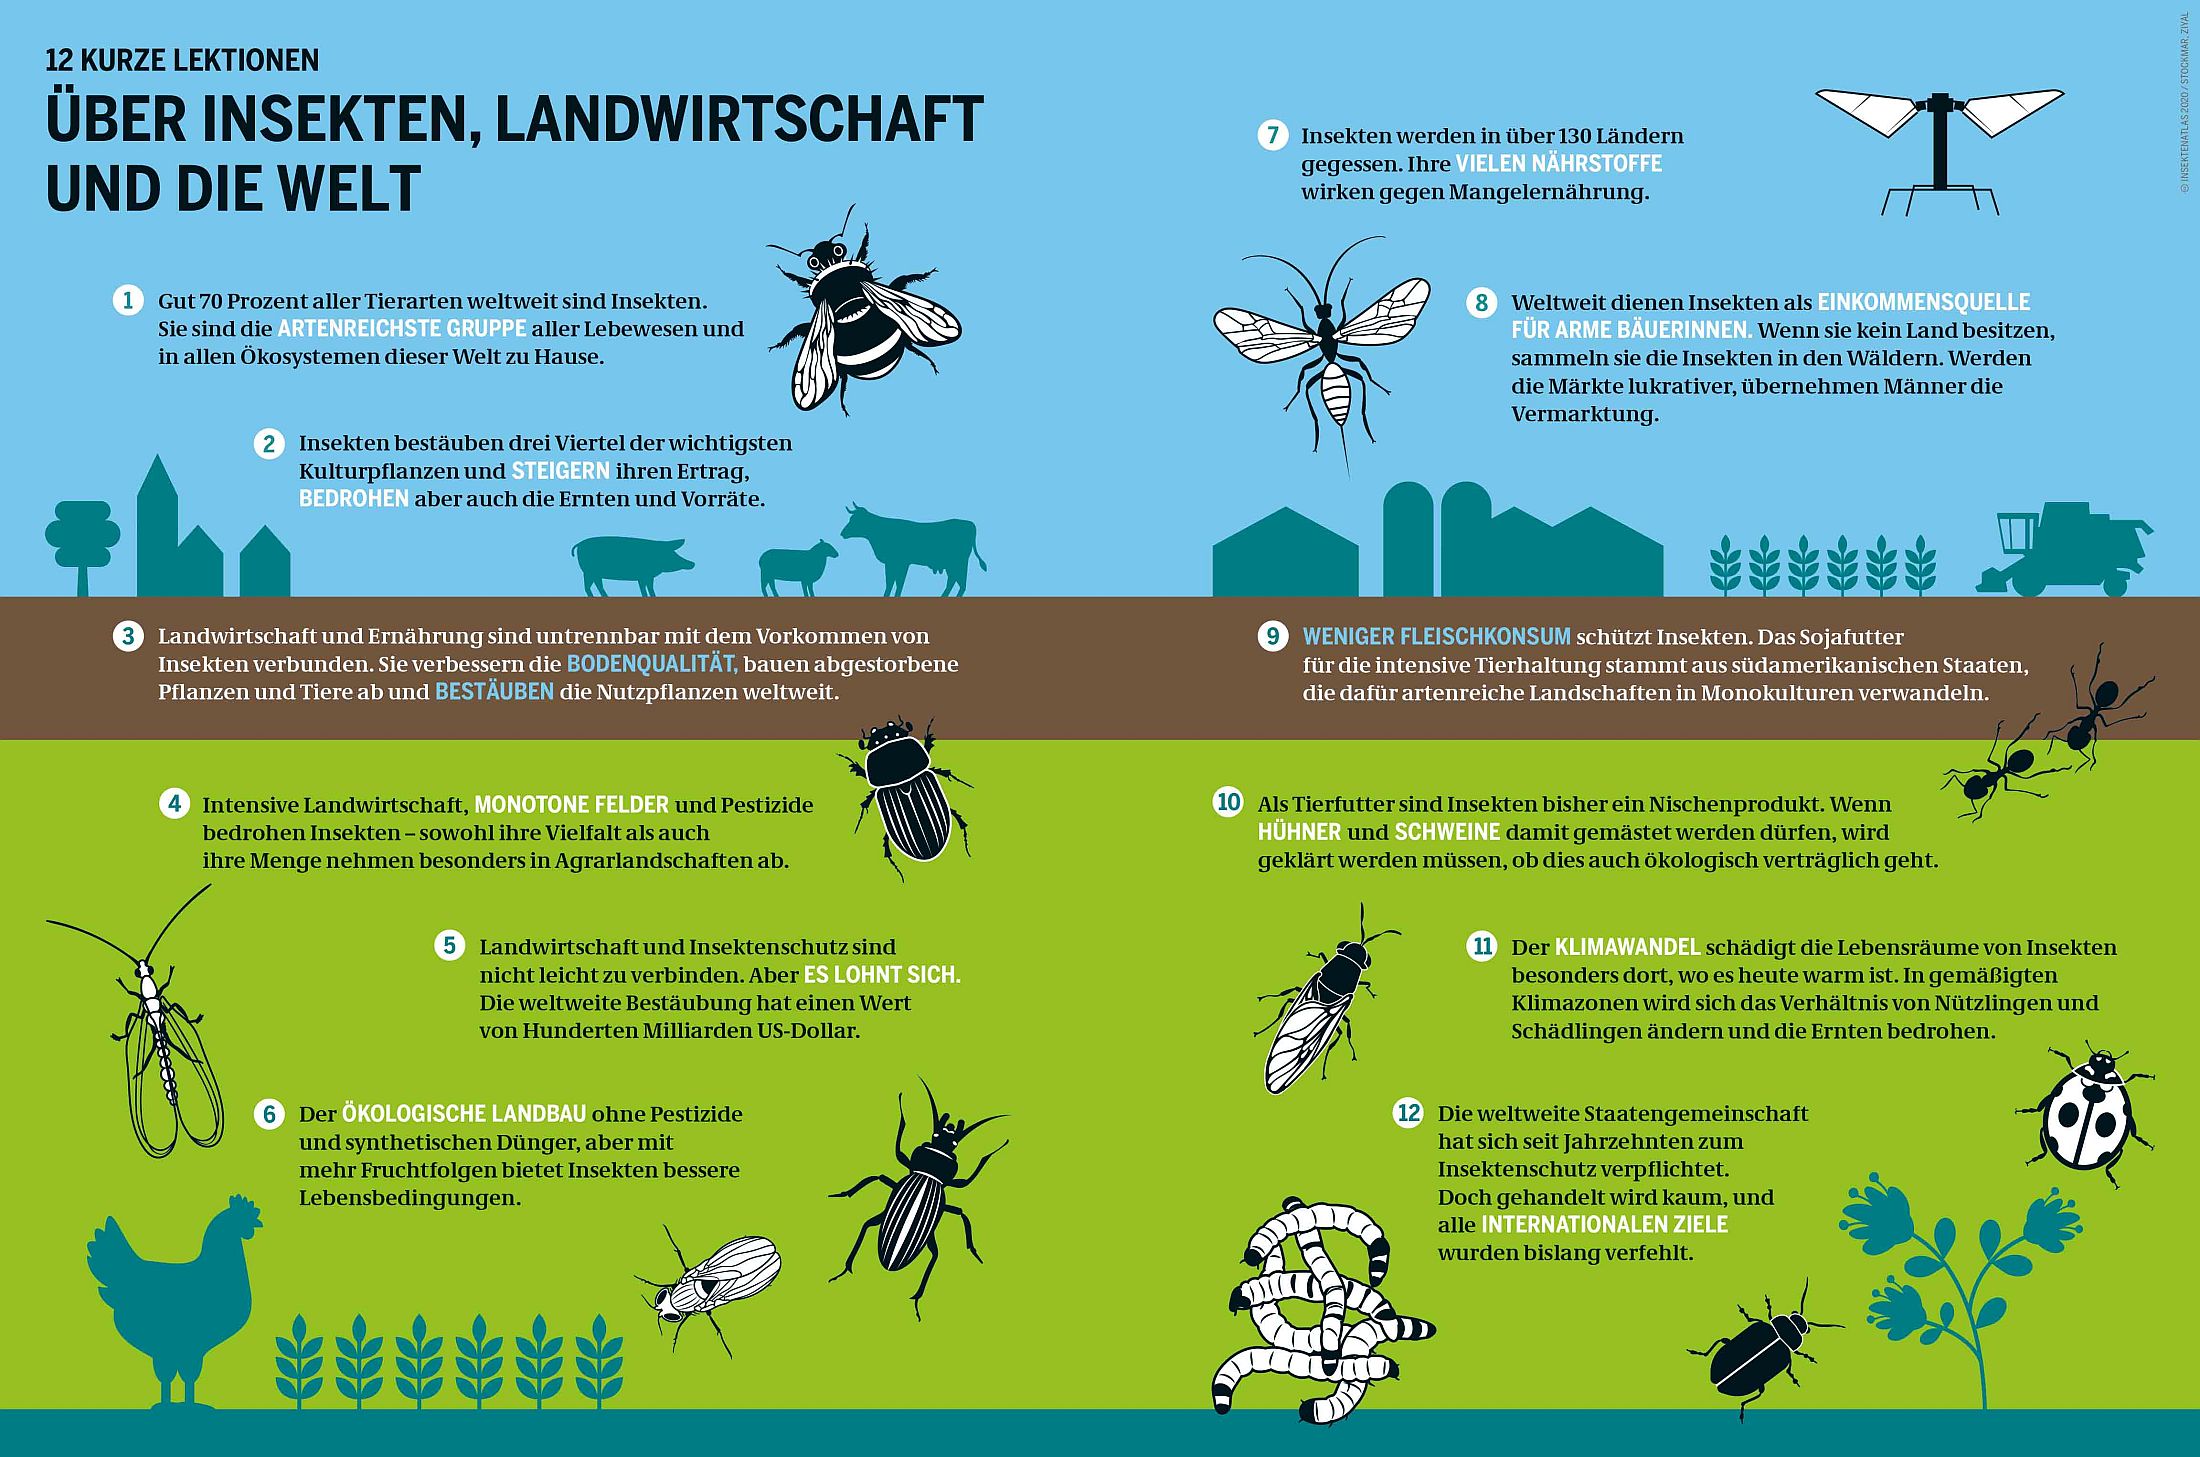 12 kurze Lektionen über Insekten, Landwirtschaft und die Welt